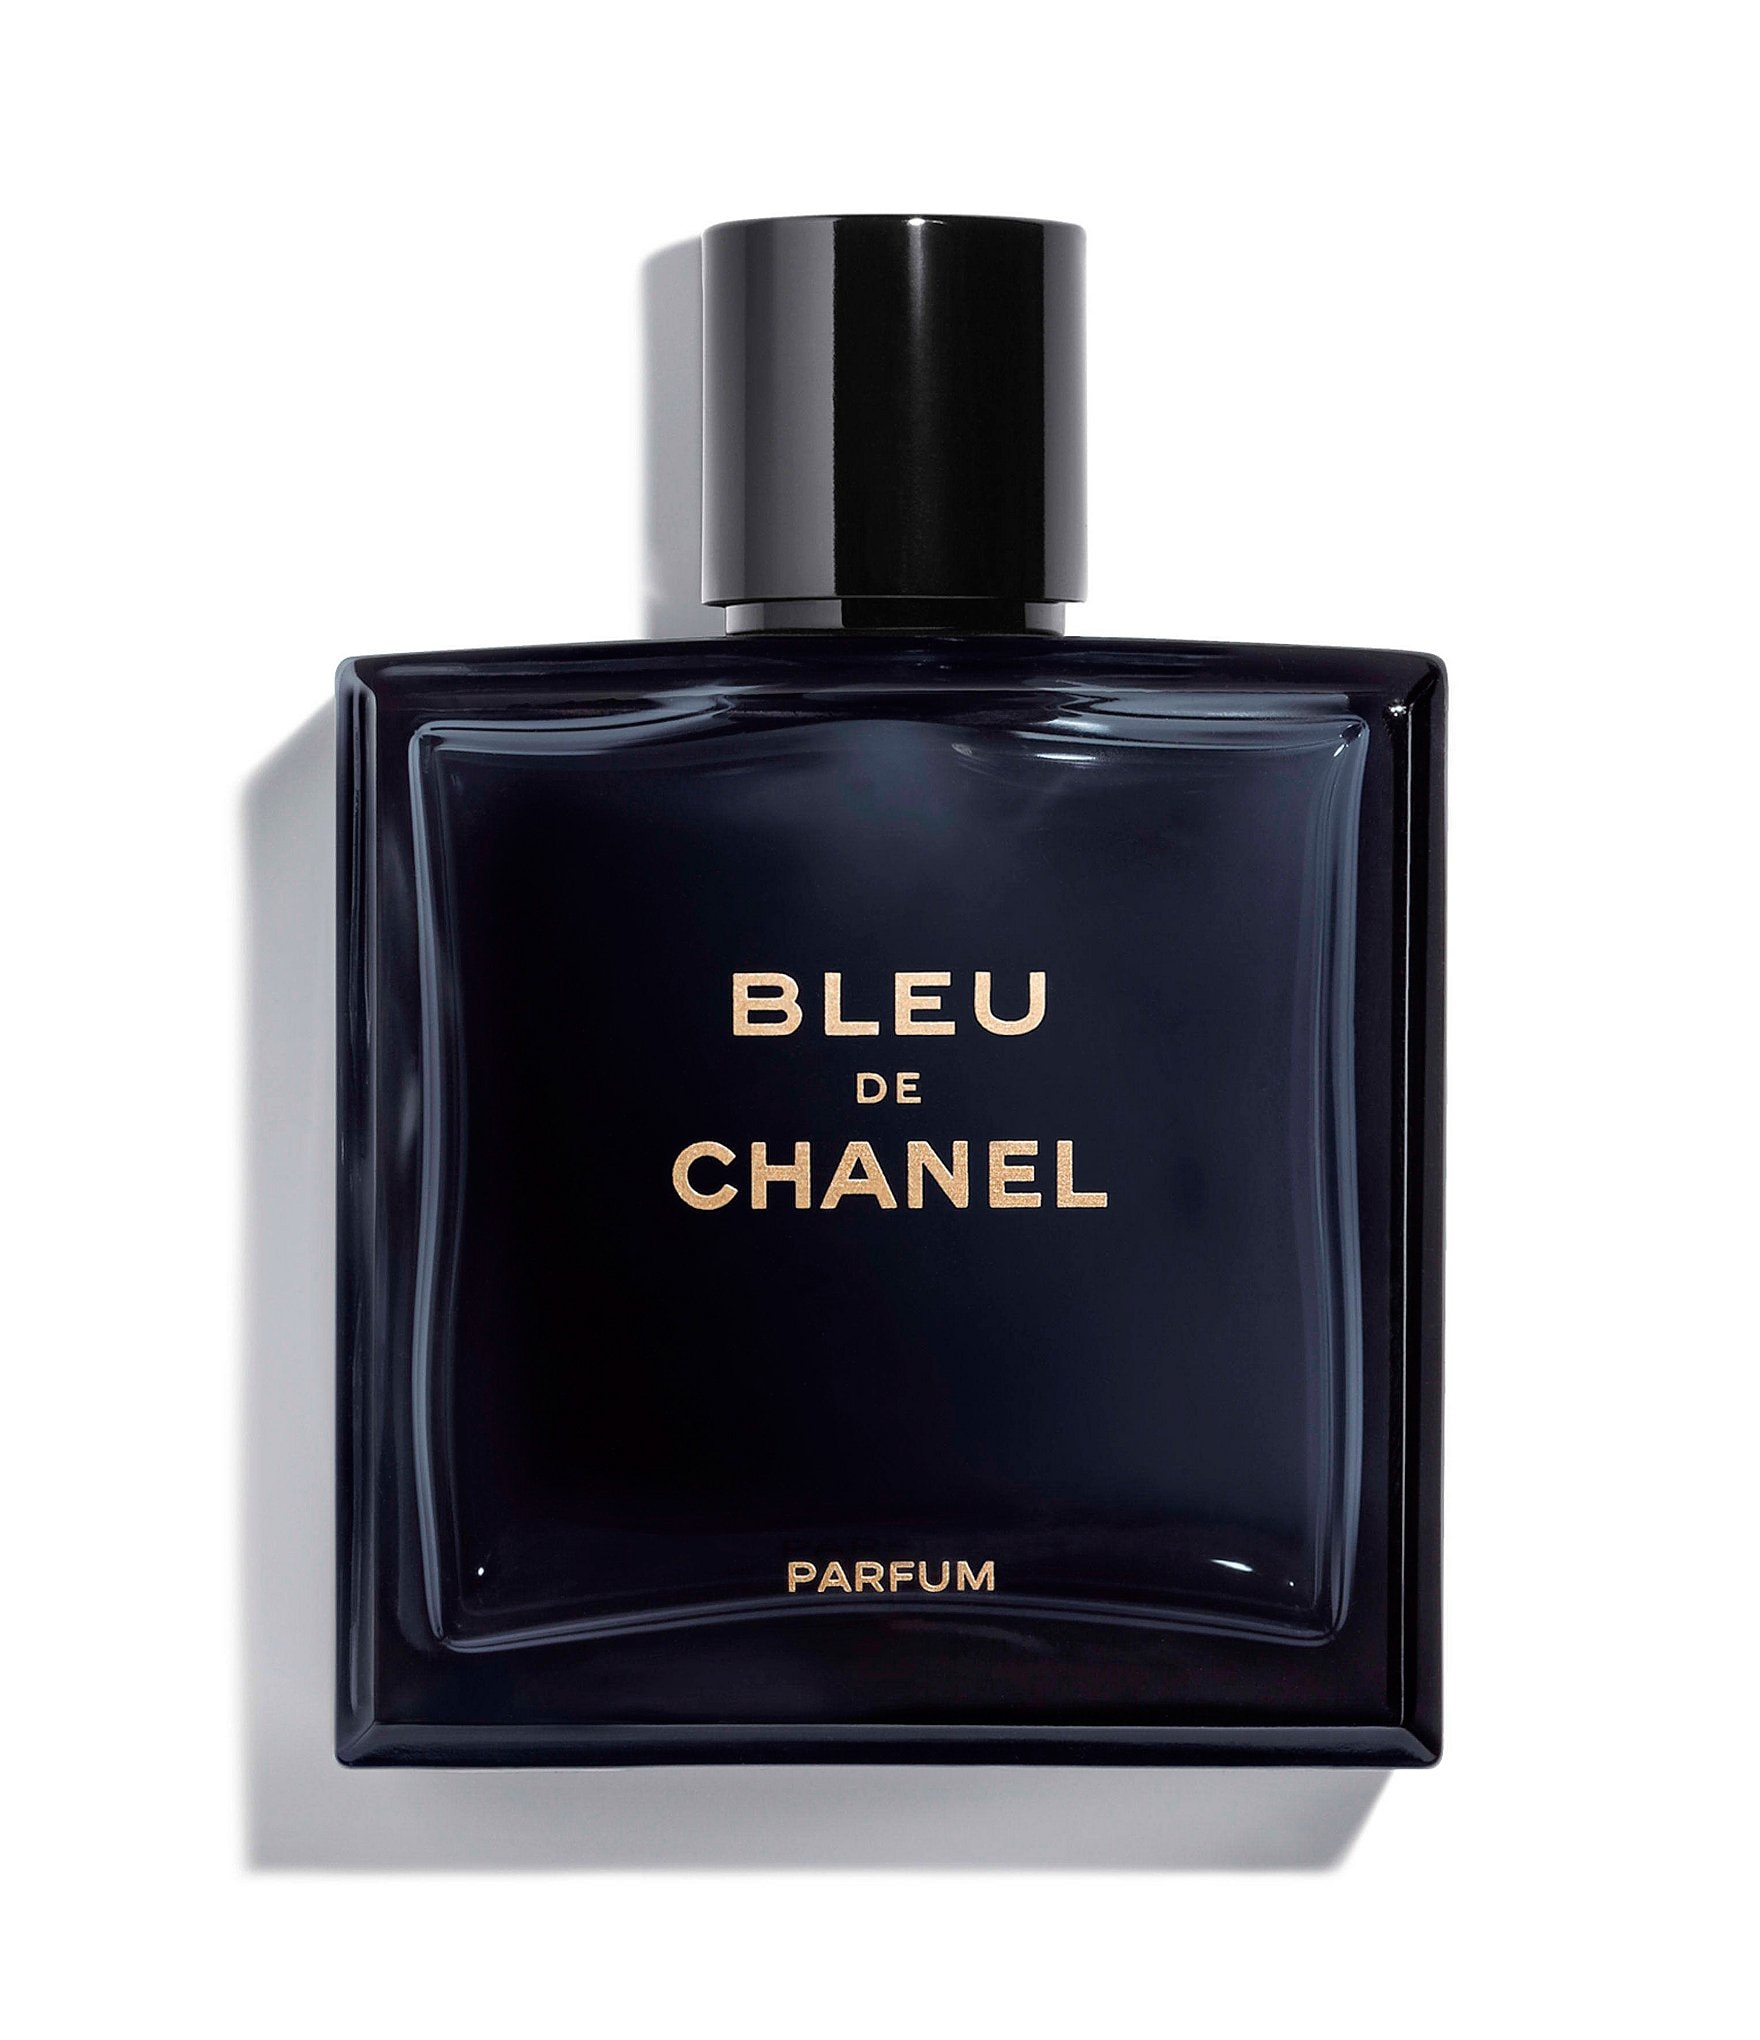 chanel perfume for men gift set